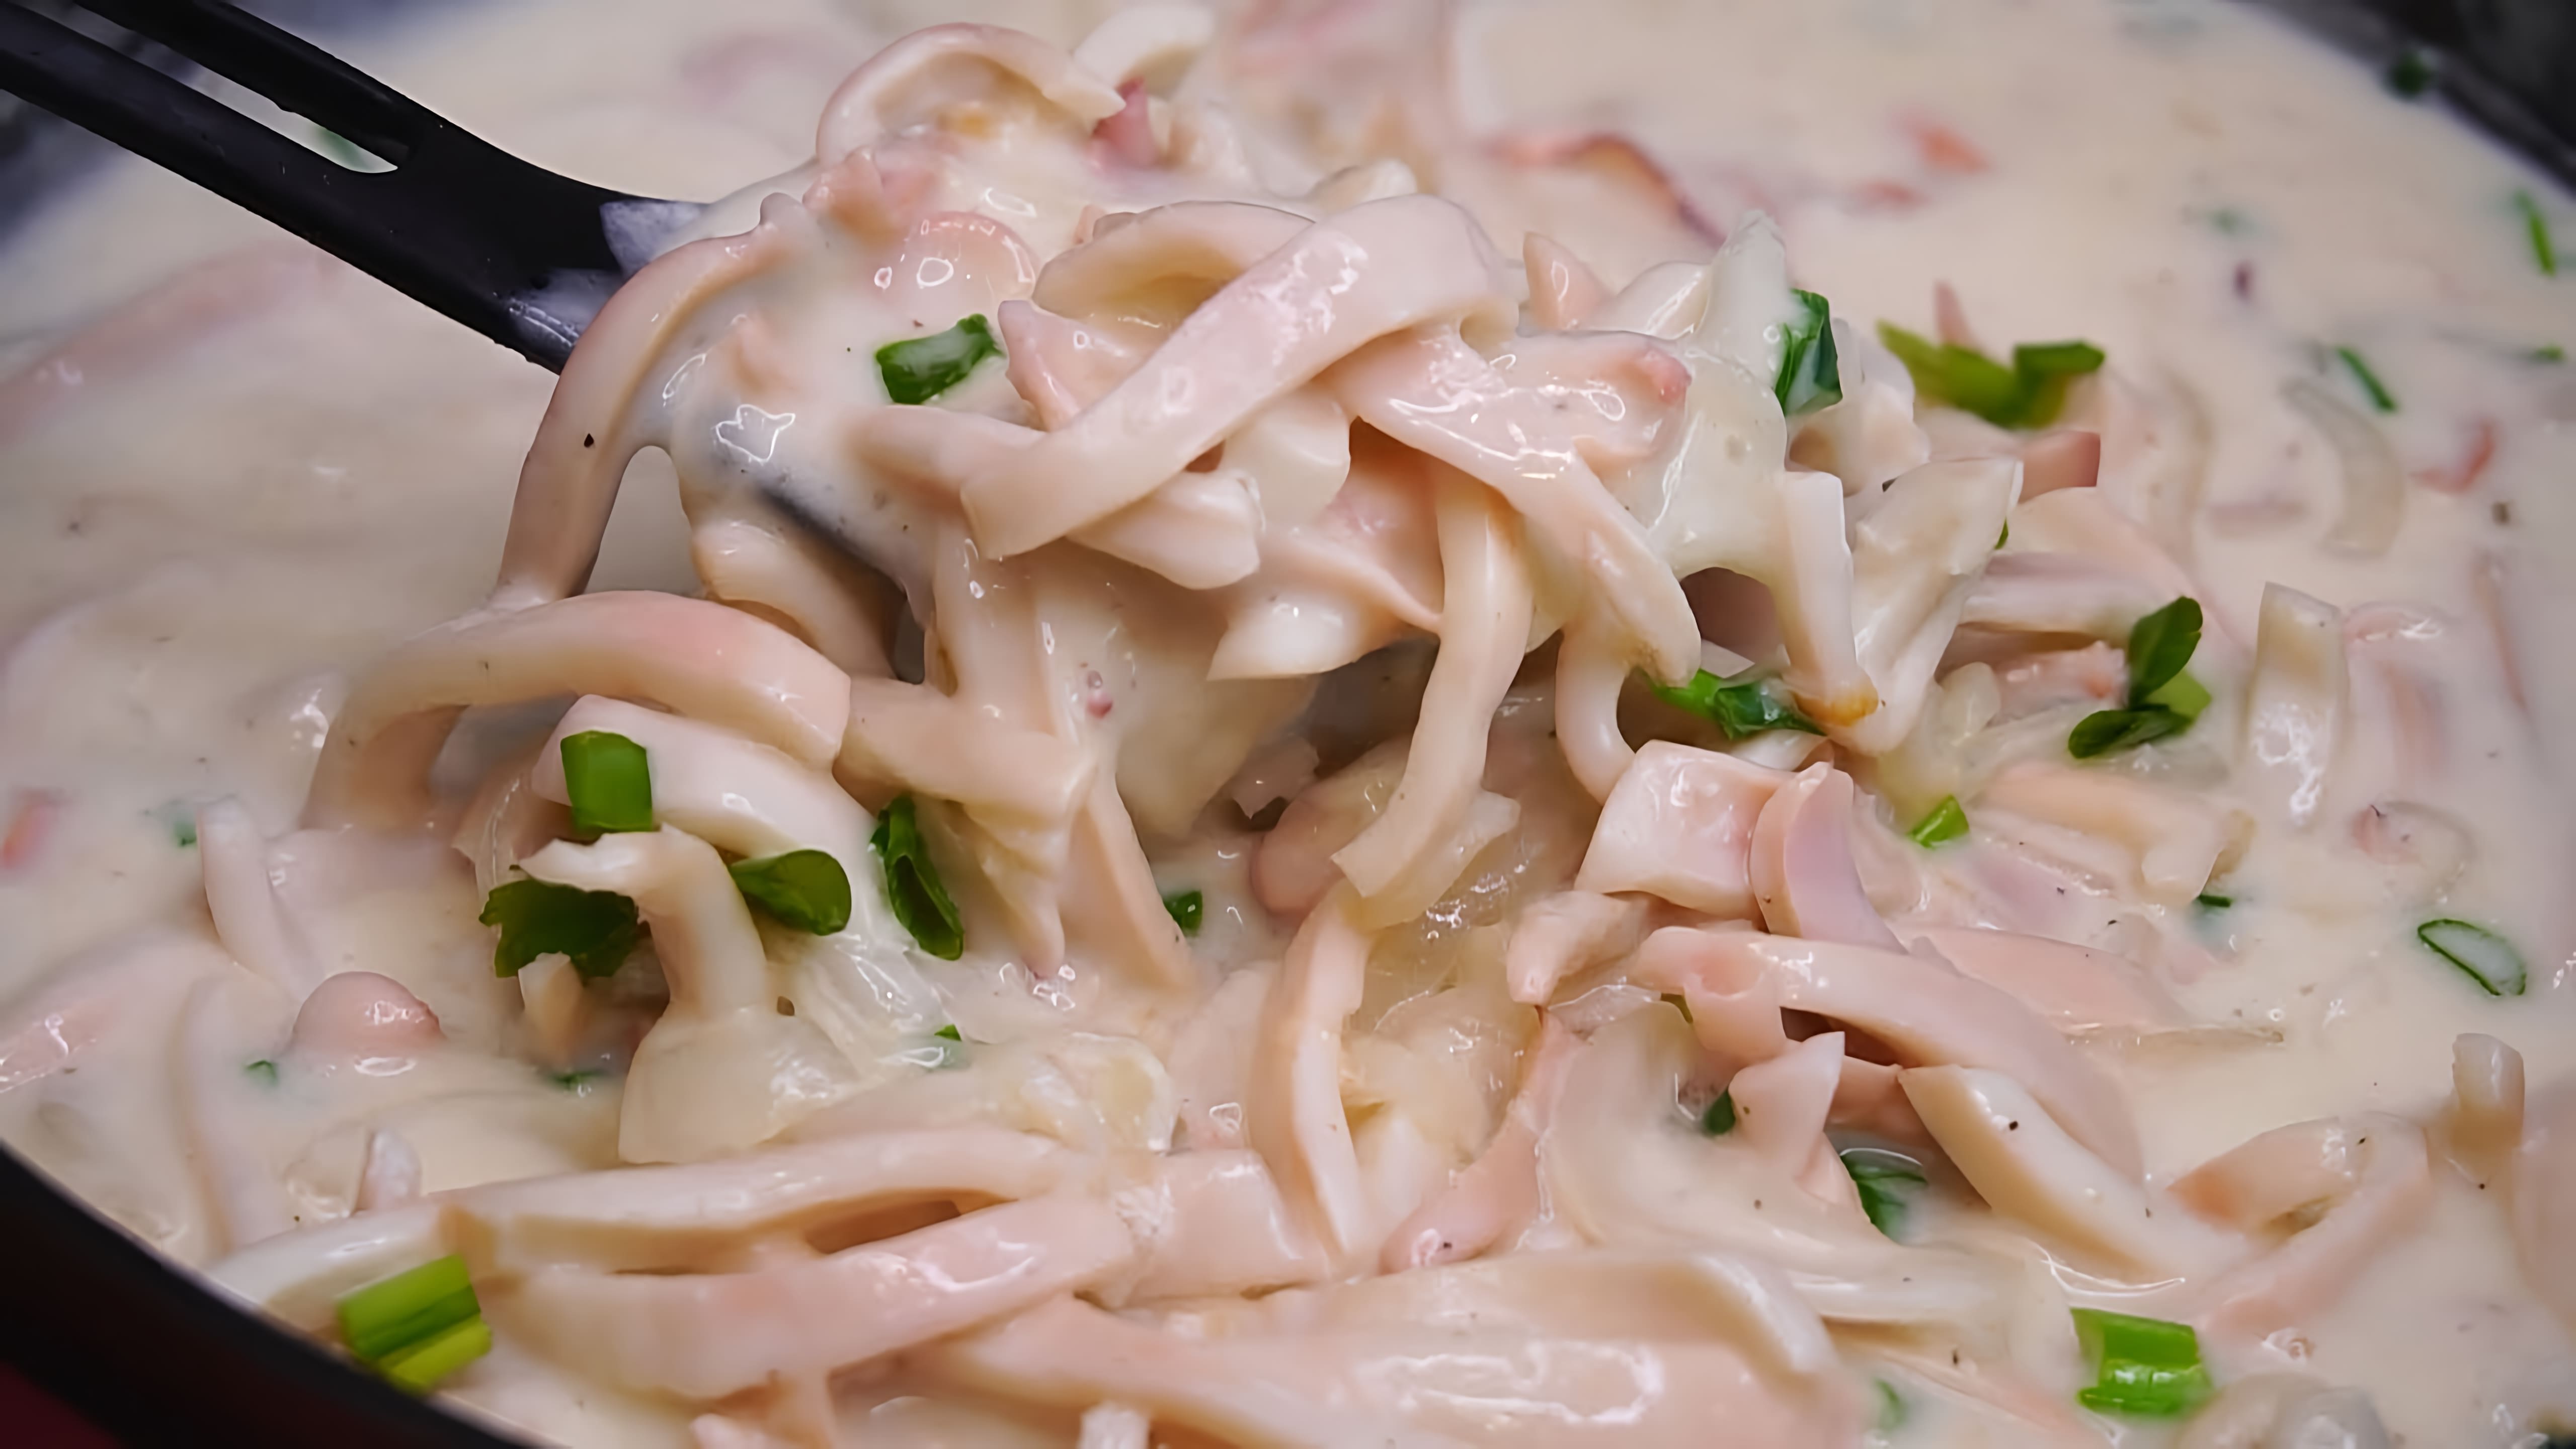 В этом видео демонстрируется процесс приготовления кальмаров в сметанном соусе